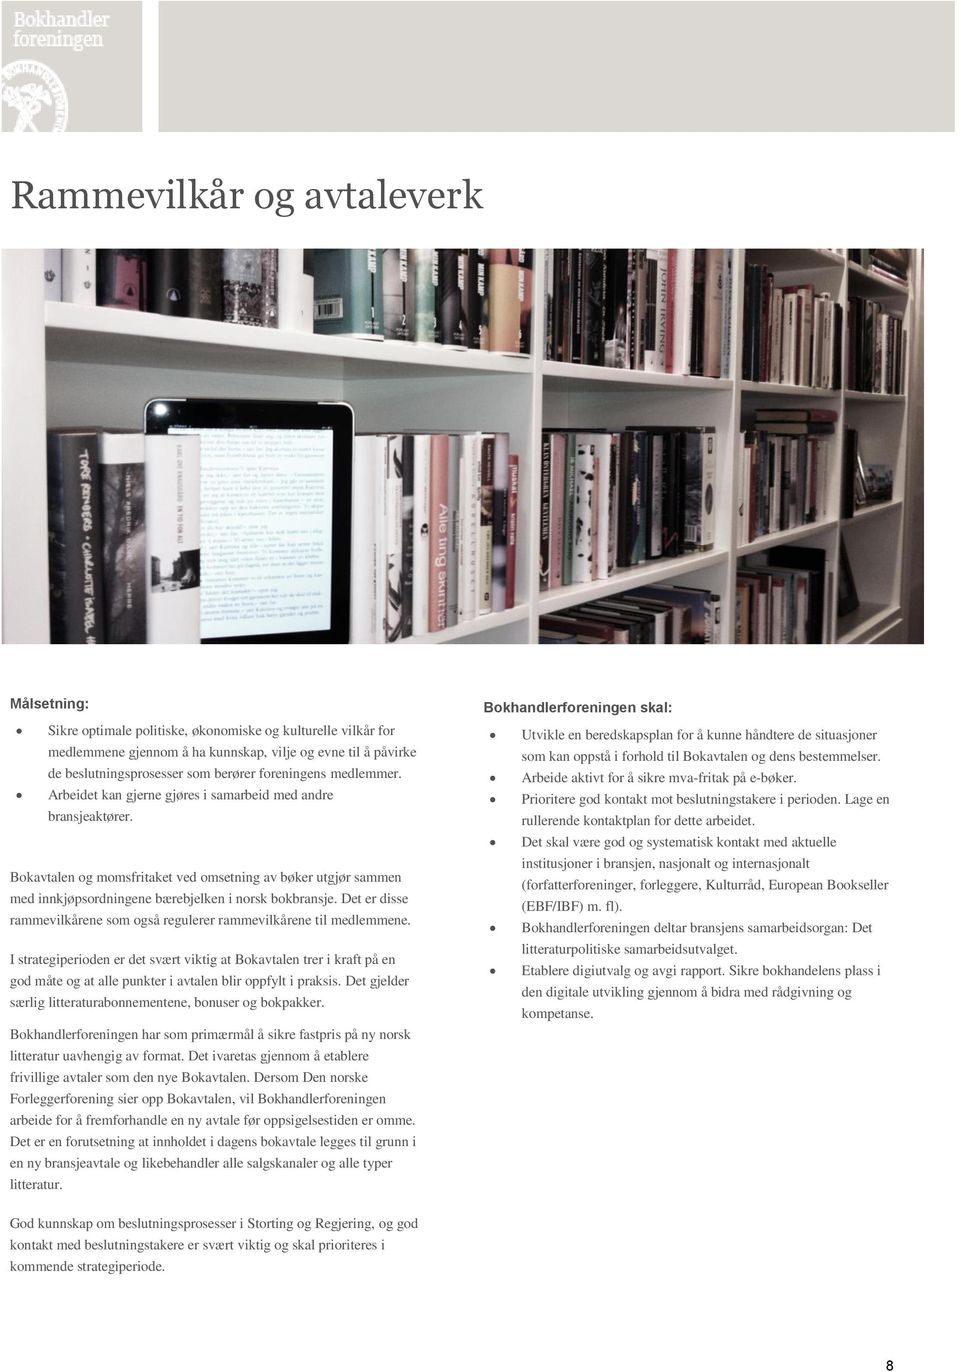 Bokavtalen og momsfritaket ved omsetning av bøker utgjør sammen med innkjøpsordningene bærebjelken i norsk bokbransje. Det er disse rammevilkårene som også regulerer rammevilkårene til medlemmene.